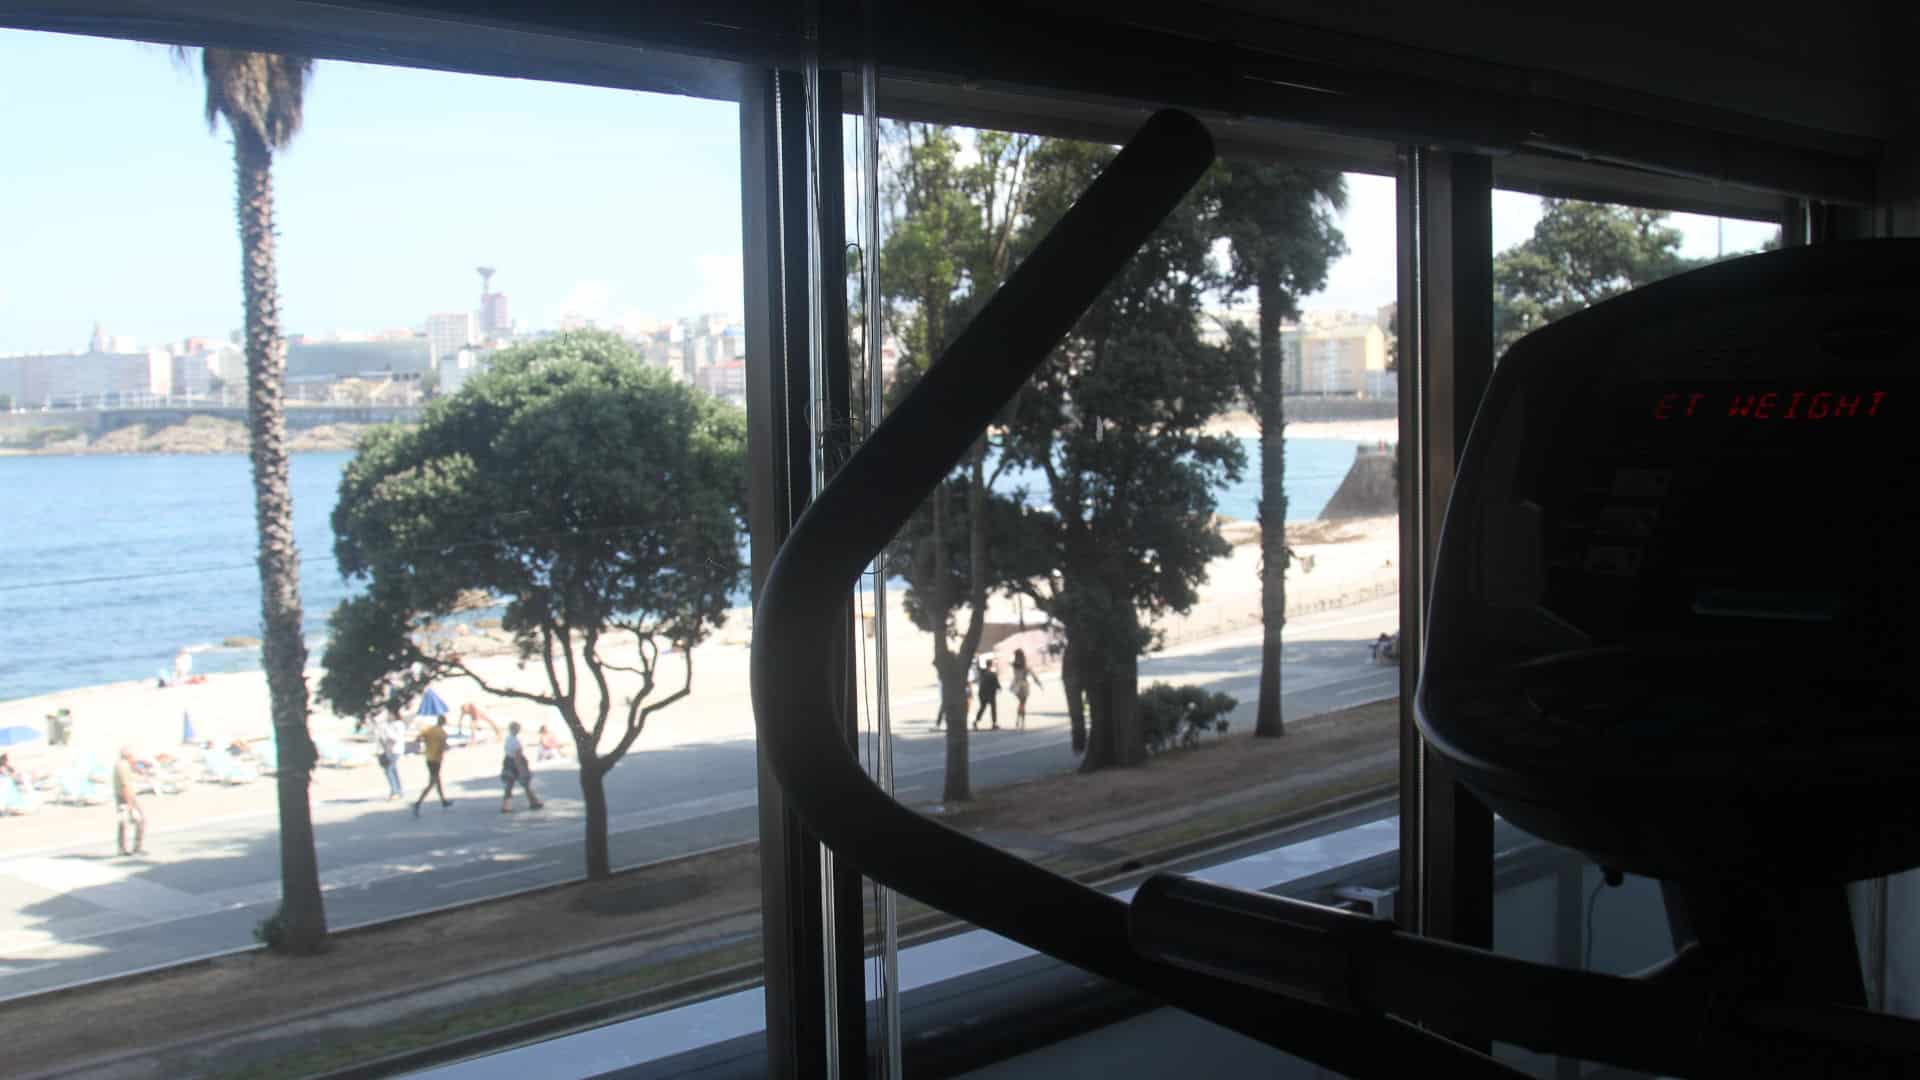 Maquina de entrenamiento. Vistas de playa Riazor